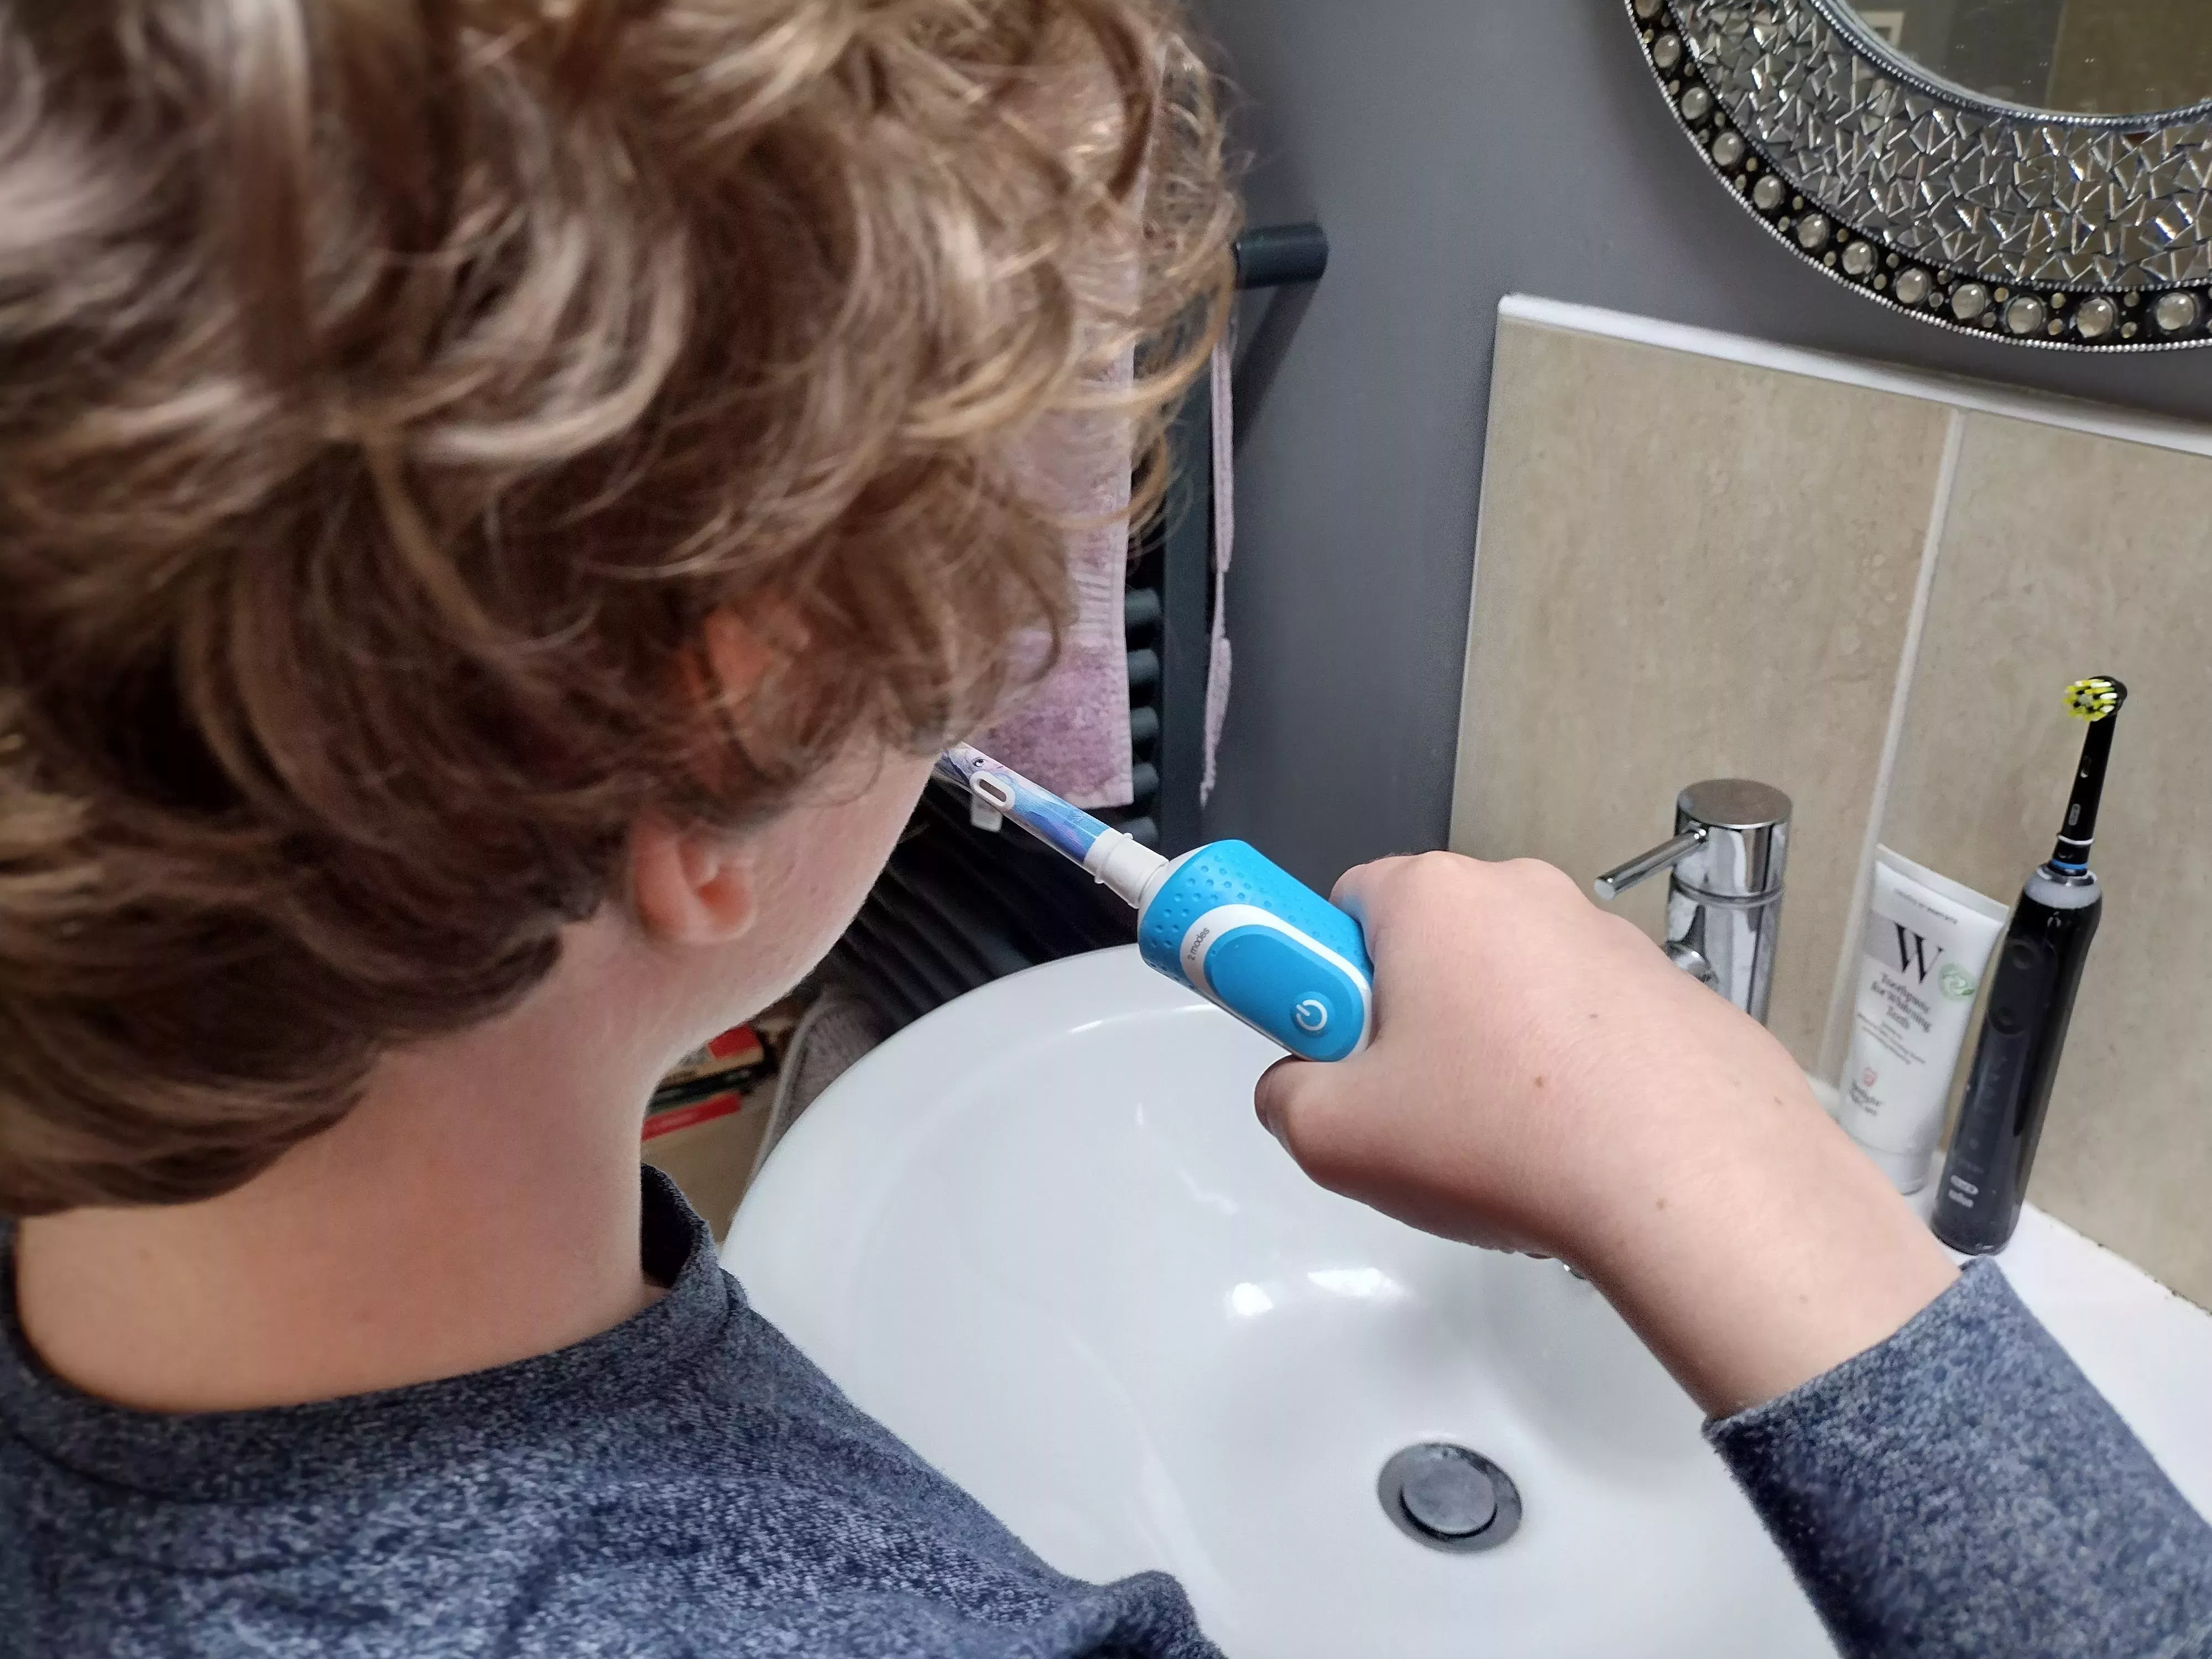 Revisión del cepillo de dientes eléctrico Oral-B Kids